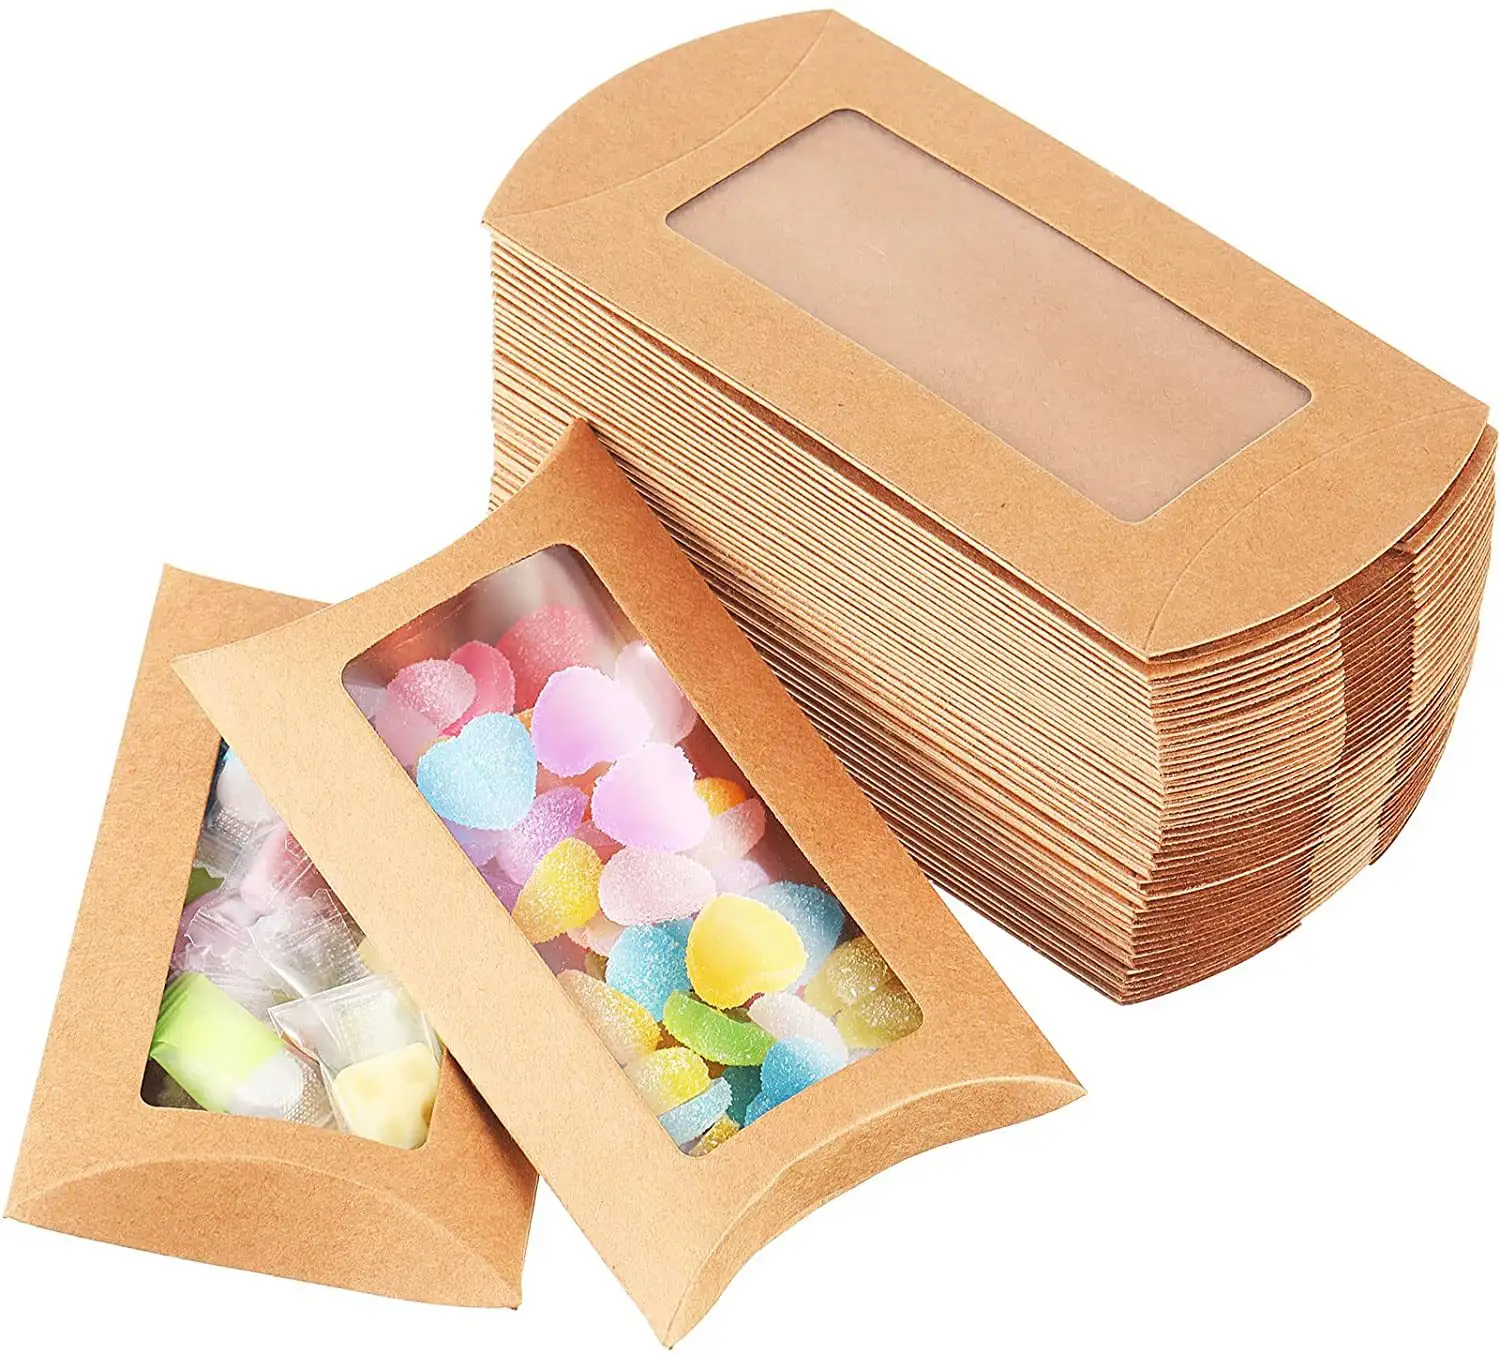 투명한 창을 가진 사탕 기술 베개 상자를 포장하는 주문 kraft 머리 연장 종이 베개 상자